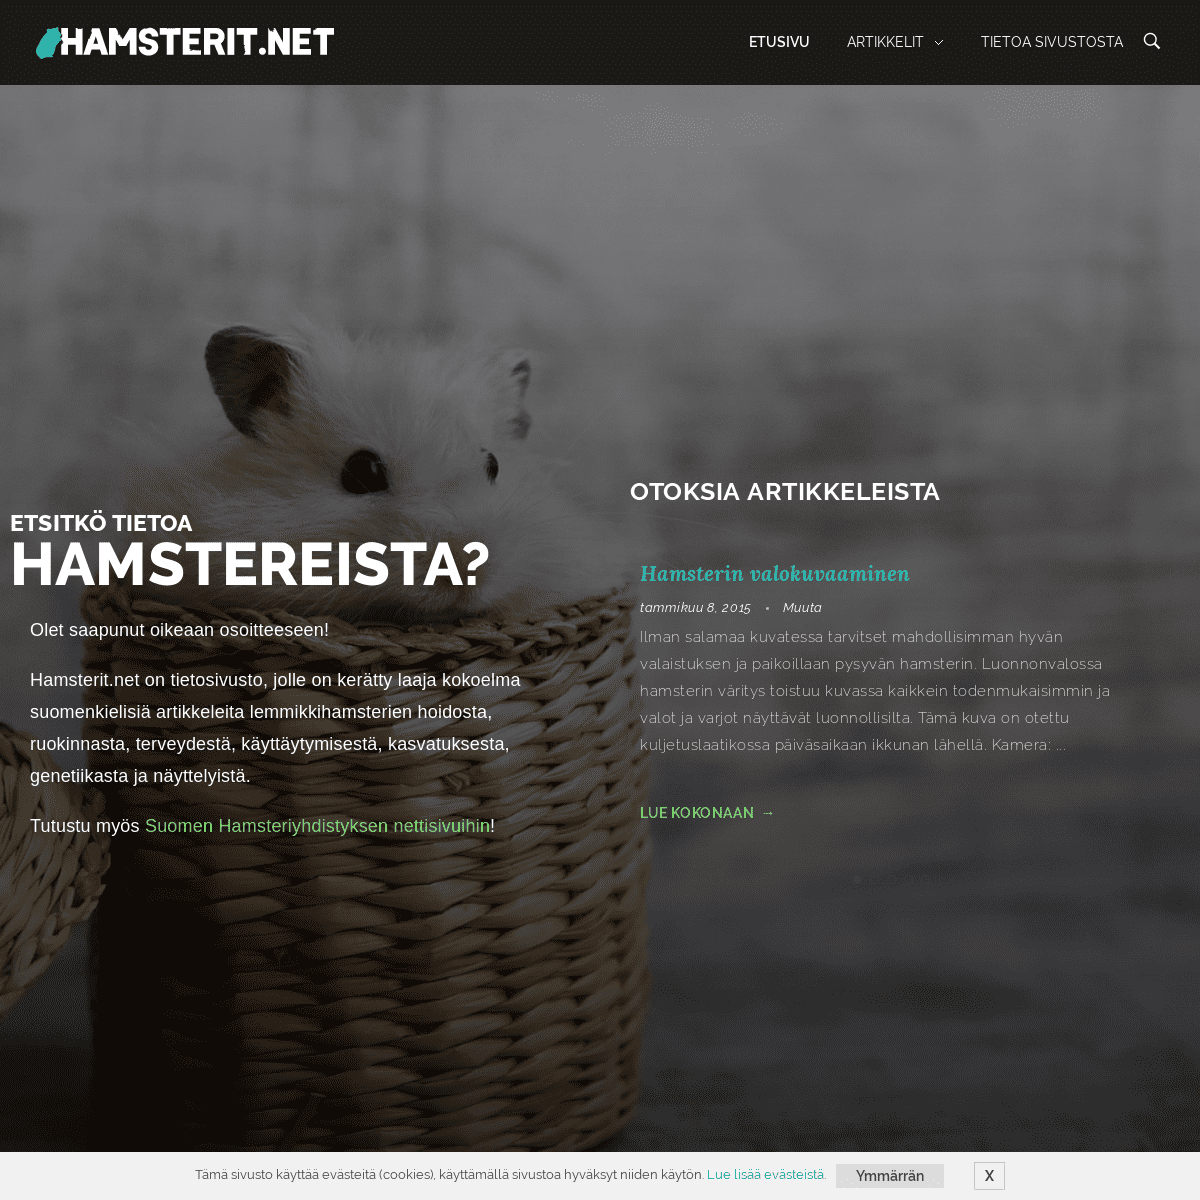 Hamsterit.net